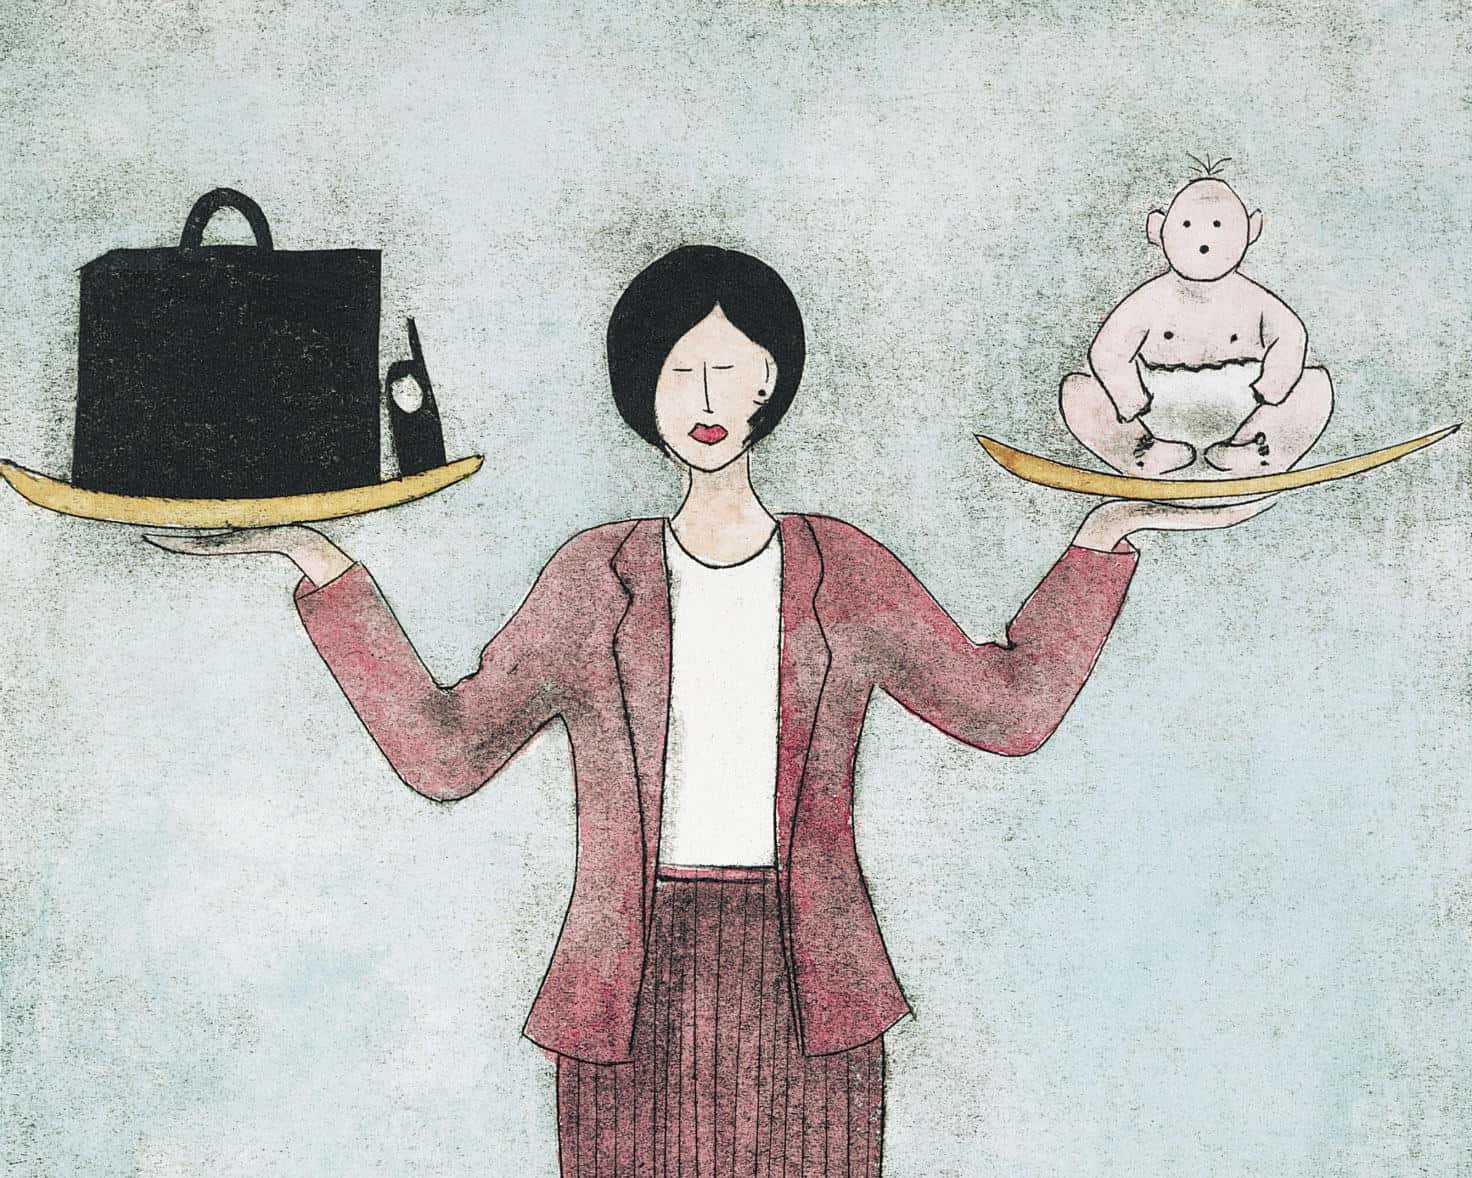 كيف يؤثر العمل على صحة المرأة وحياتها الأسرية؟